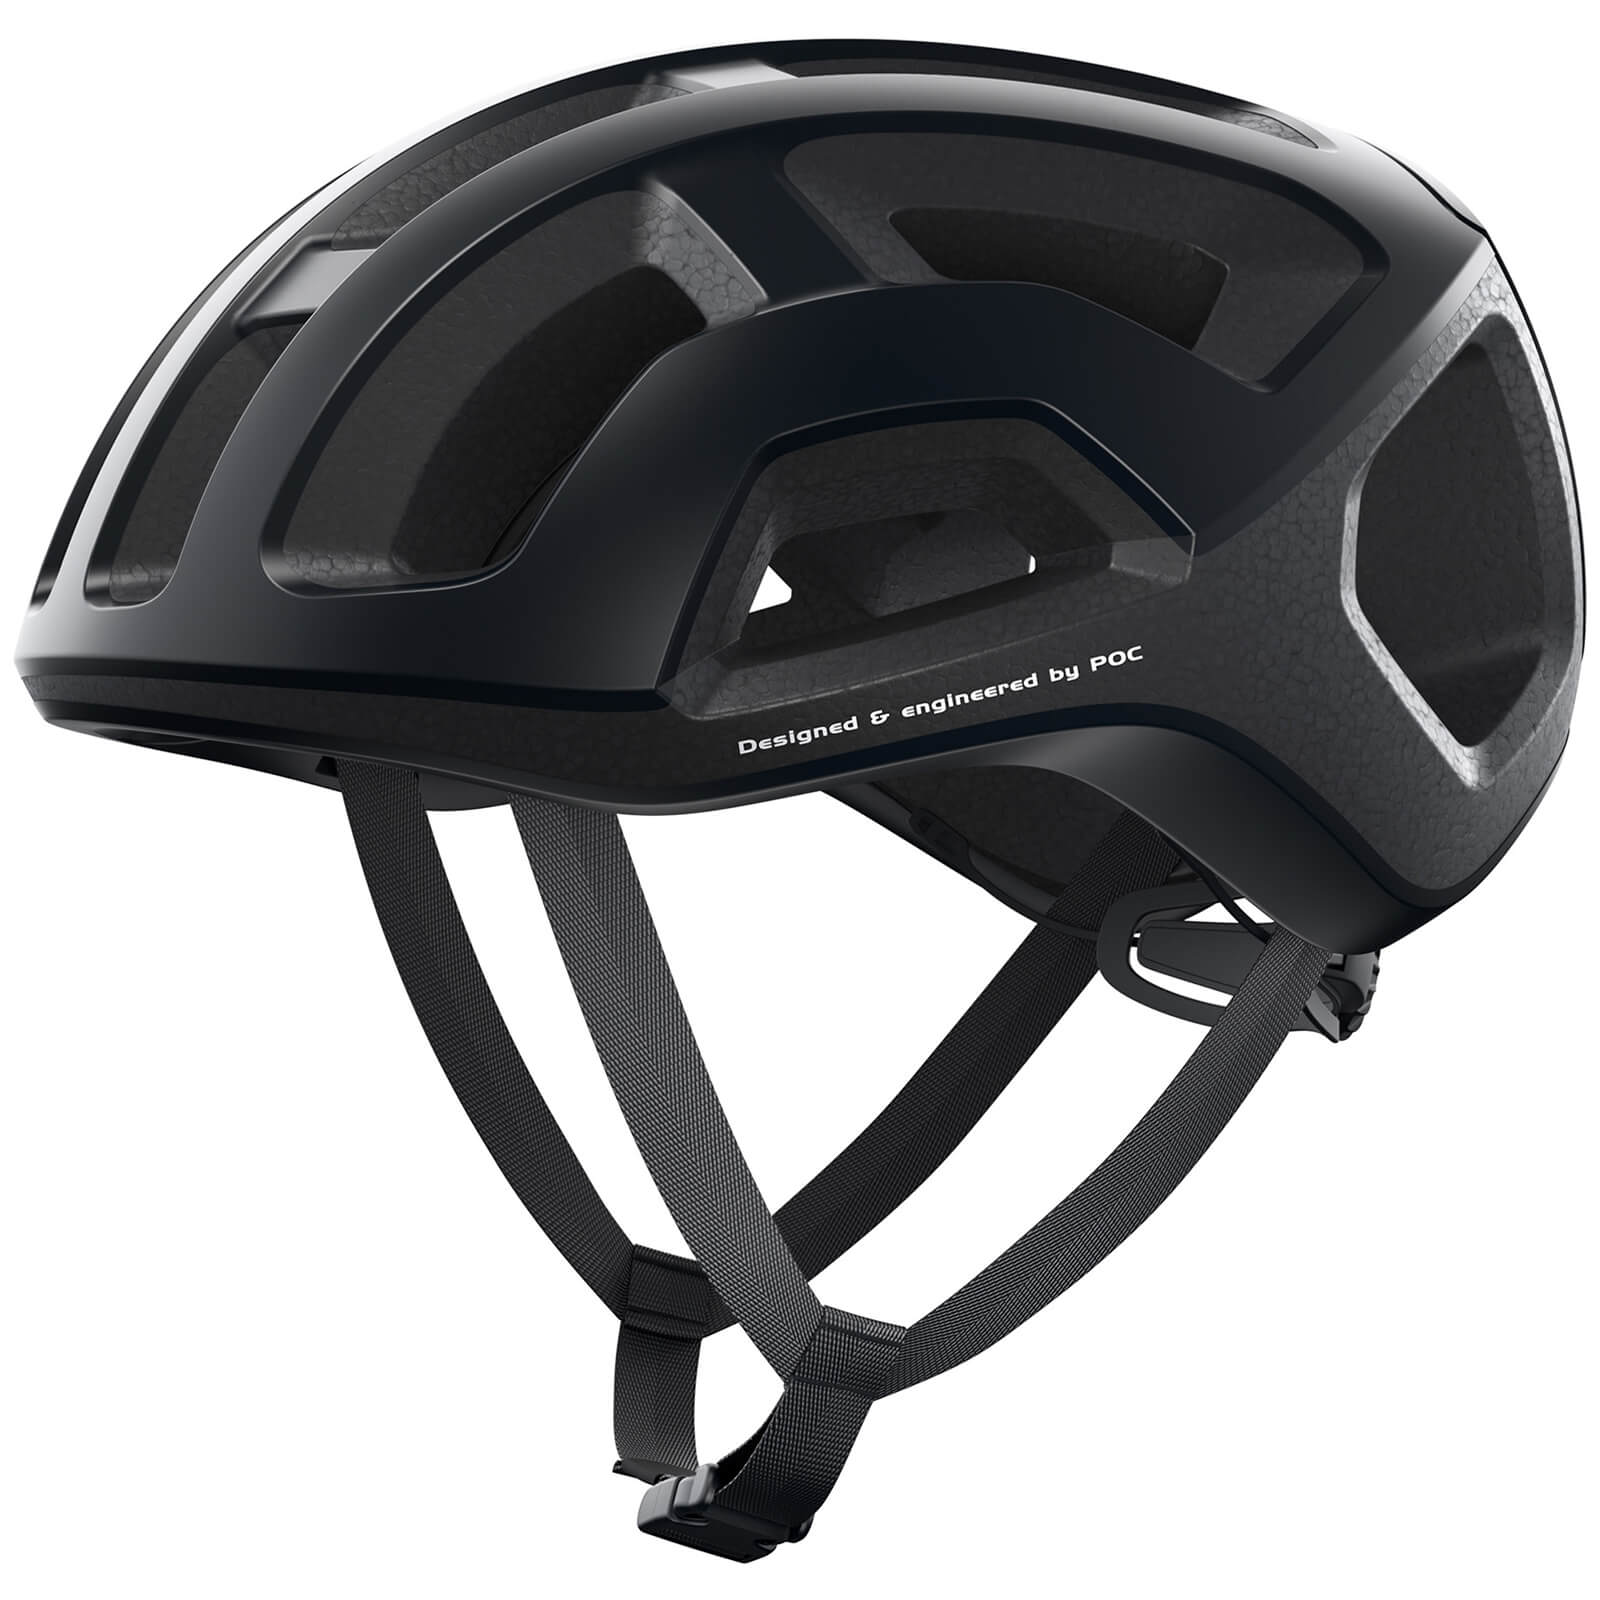 Image of POC Ventral Lite Road Helmet - S/50cm-56cm - Uranium Black Matt